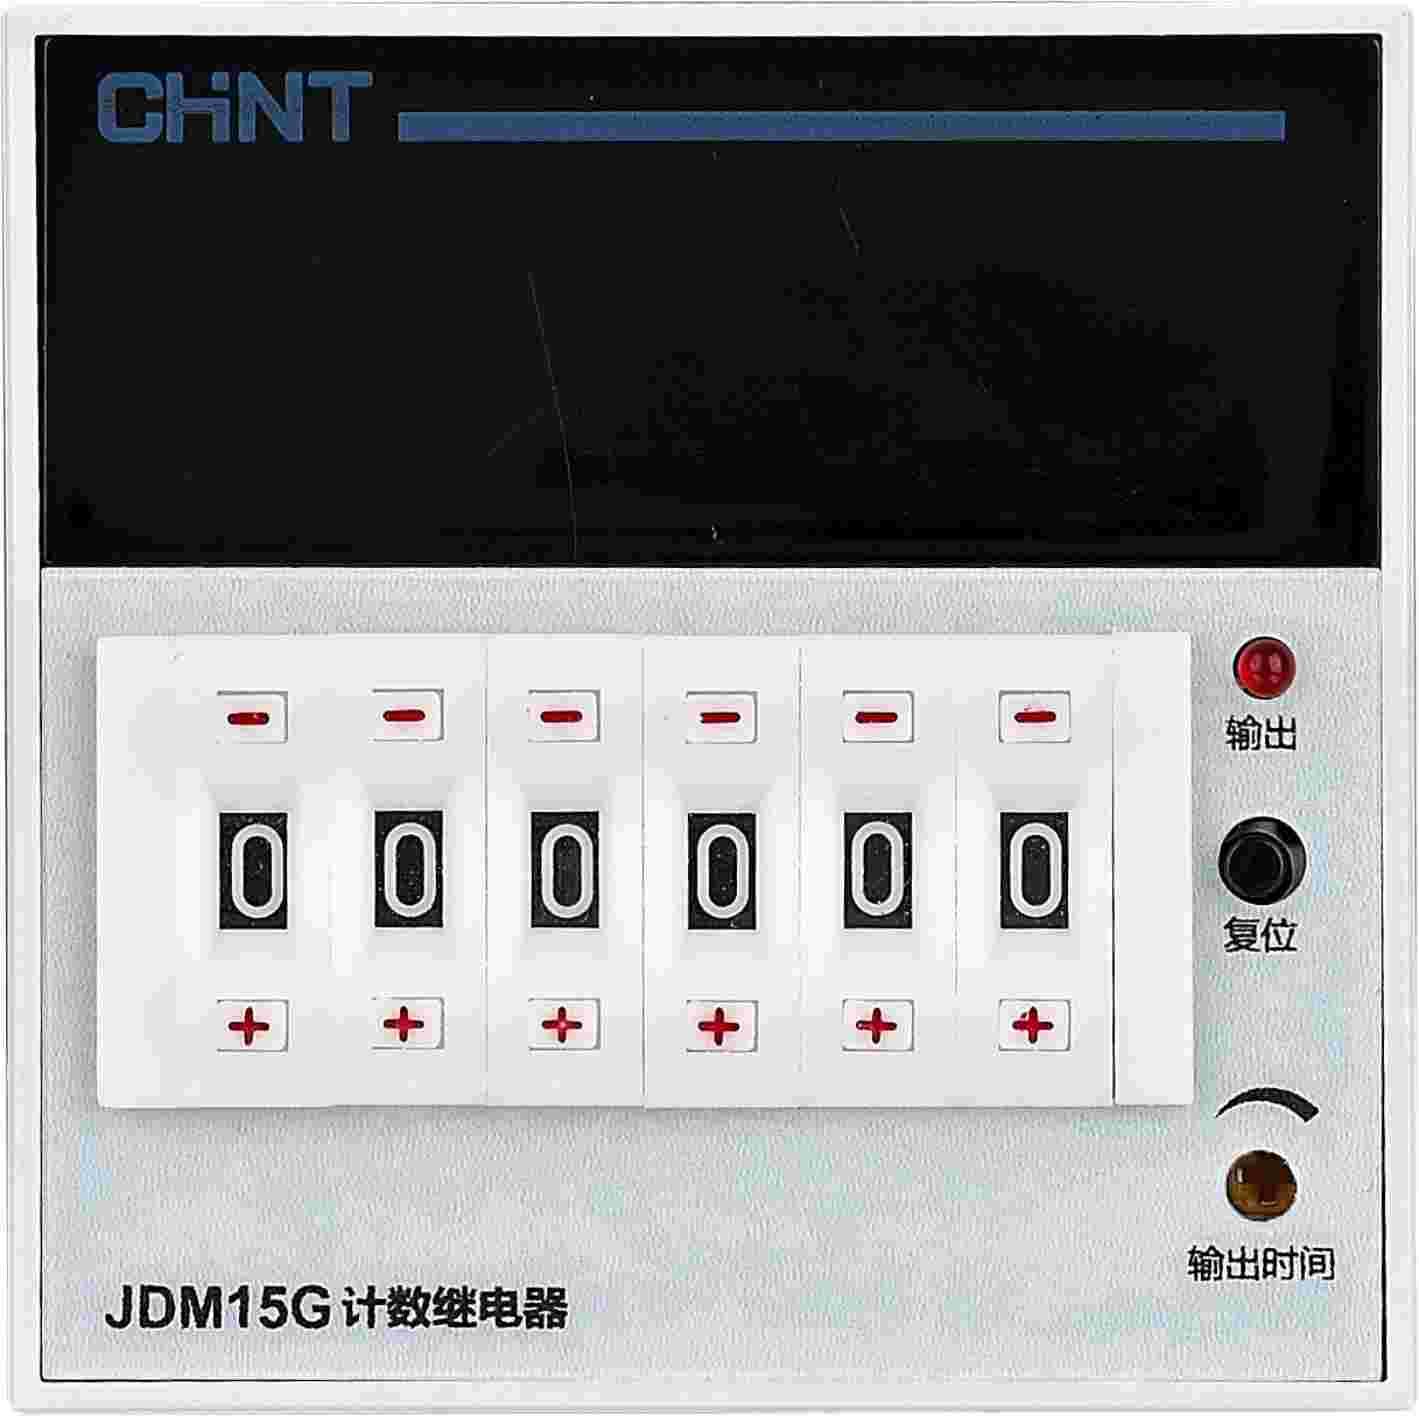 JDM15G 计数继电器正视图.png